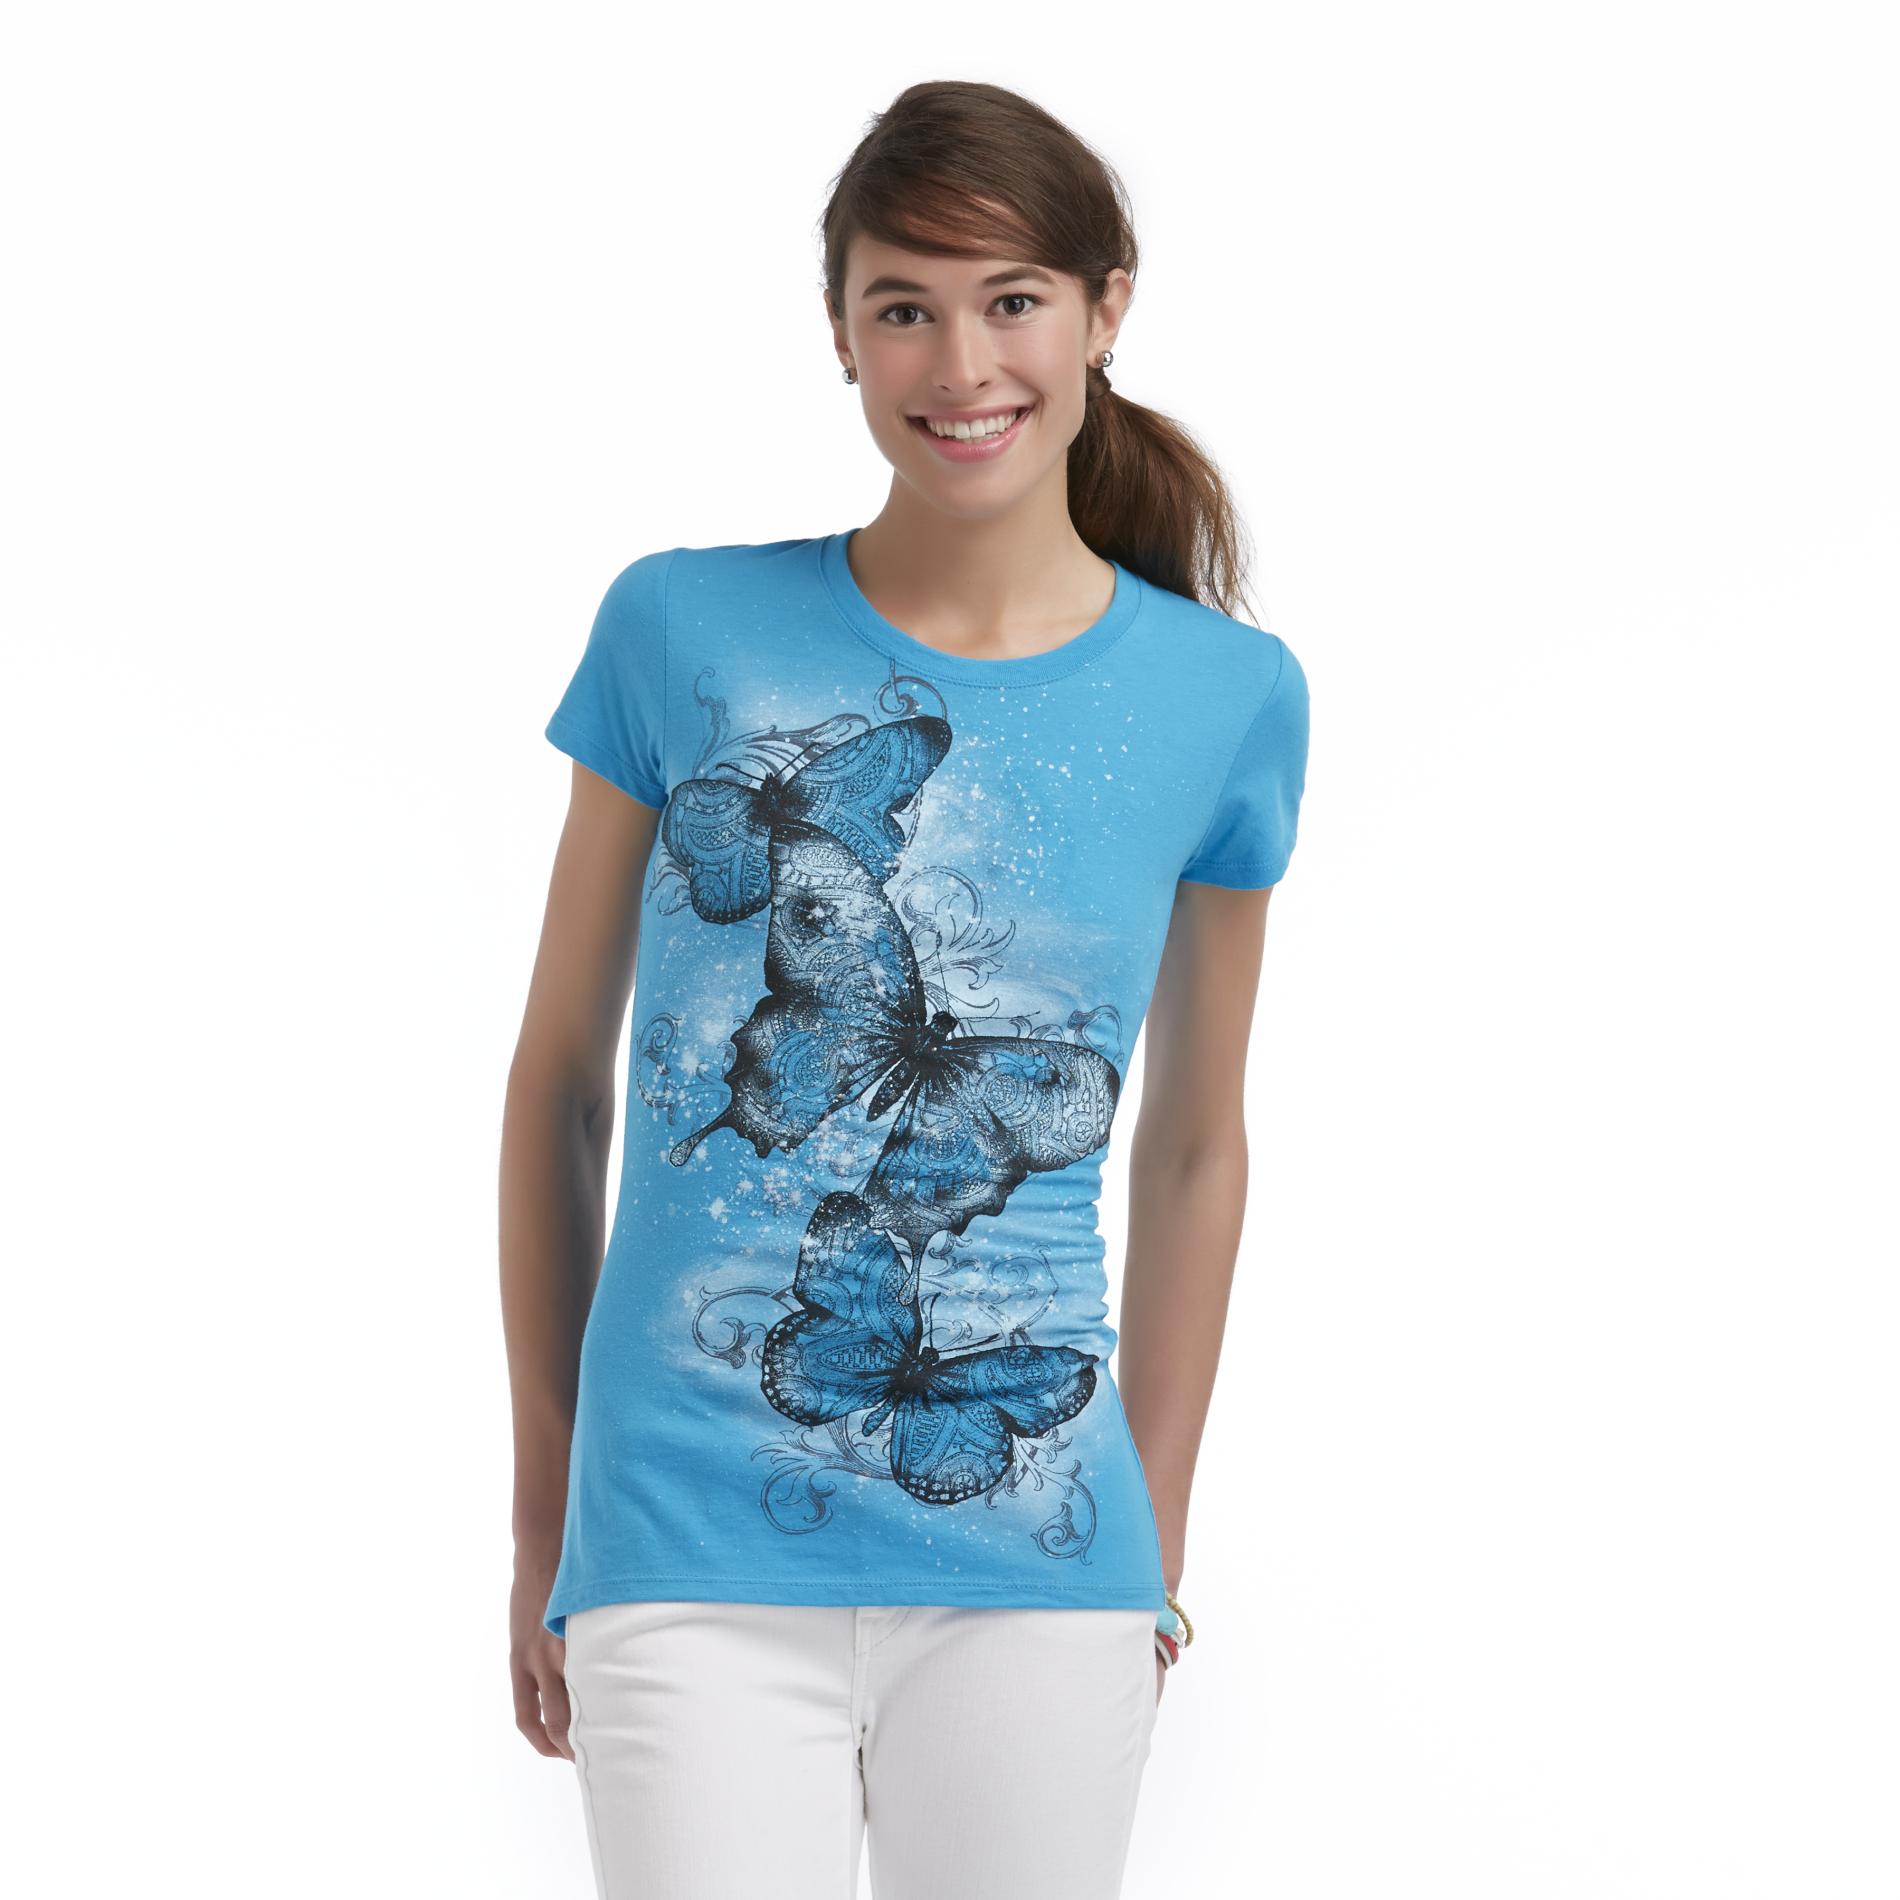 Women's Graphic T-Shirt - Butterflies